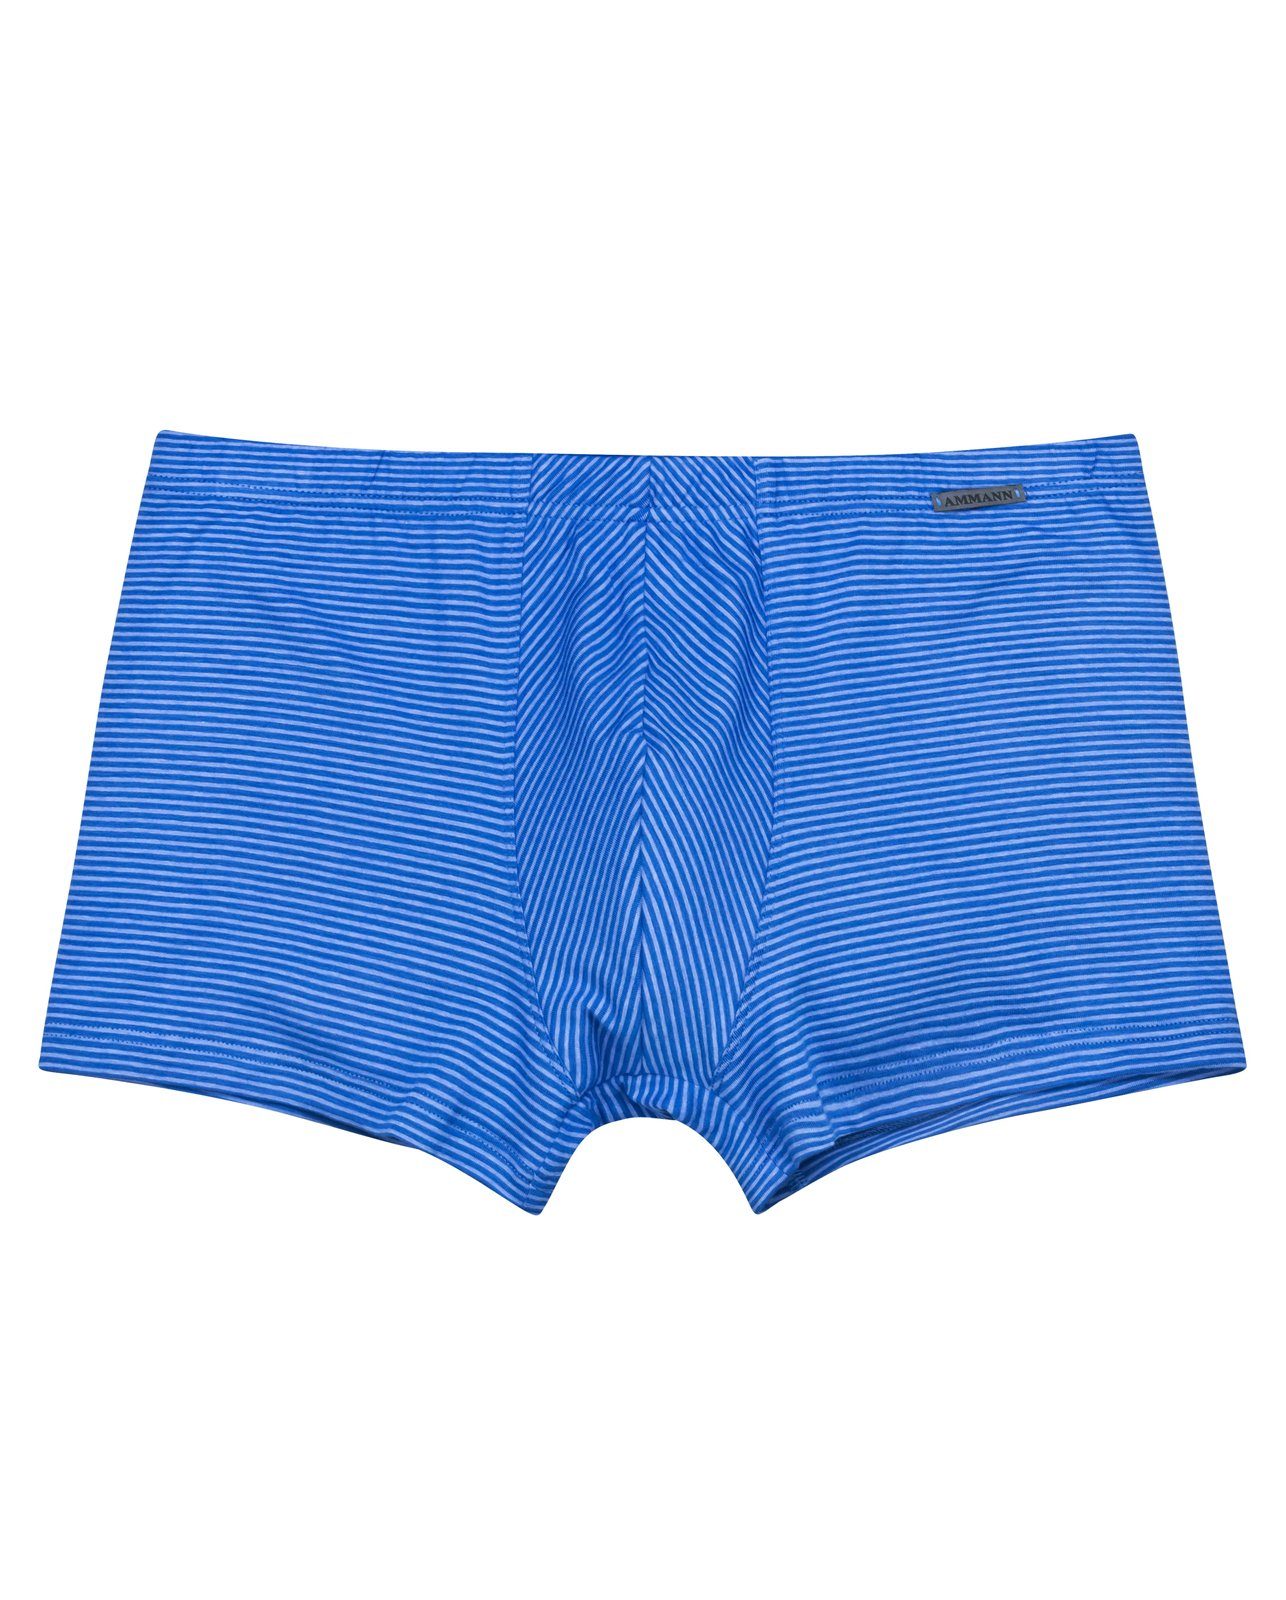 [Vertrauen zuerst, Qualität zuerst] Ammann Retro Pants More Safir & Mehrpack (3-St) Retro-Shorts Cotton